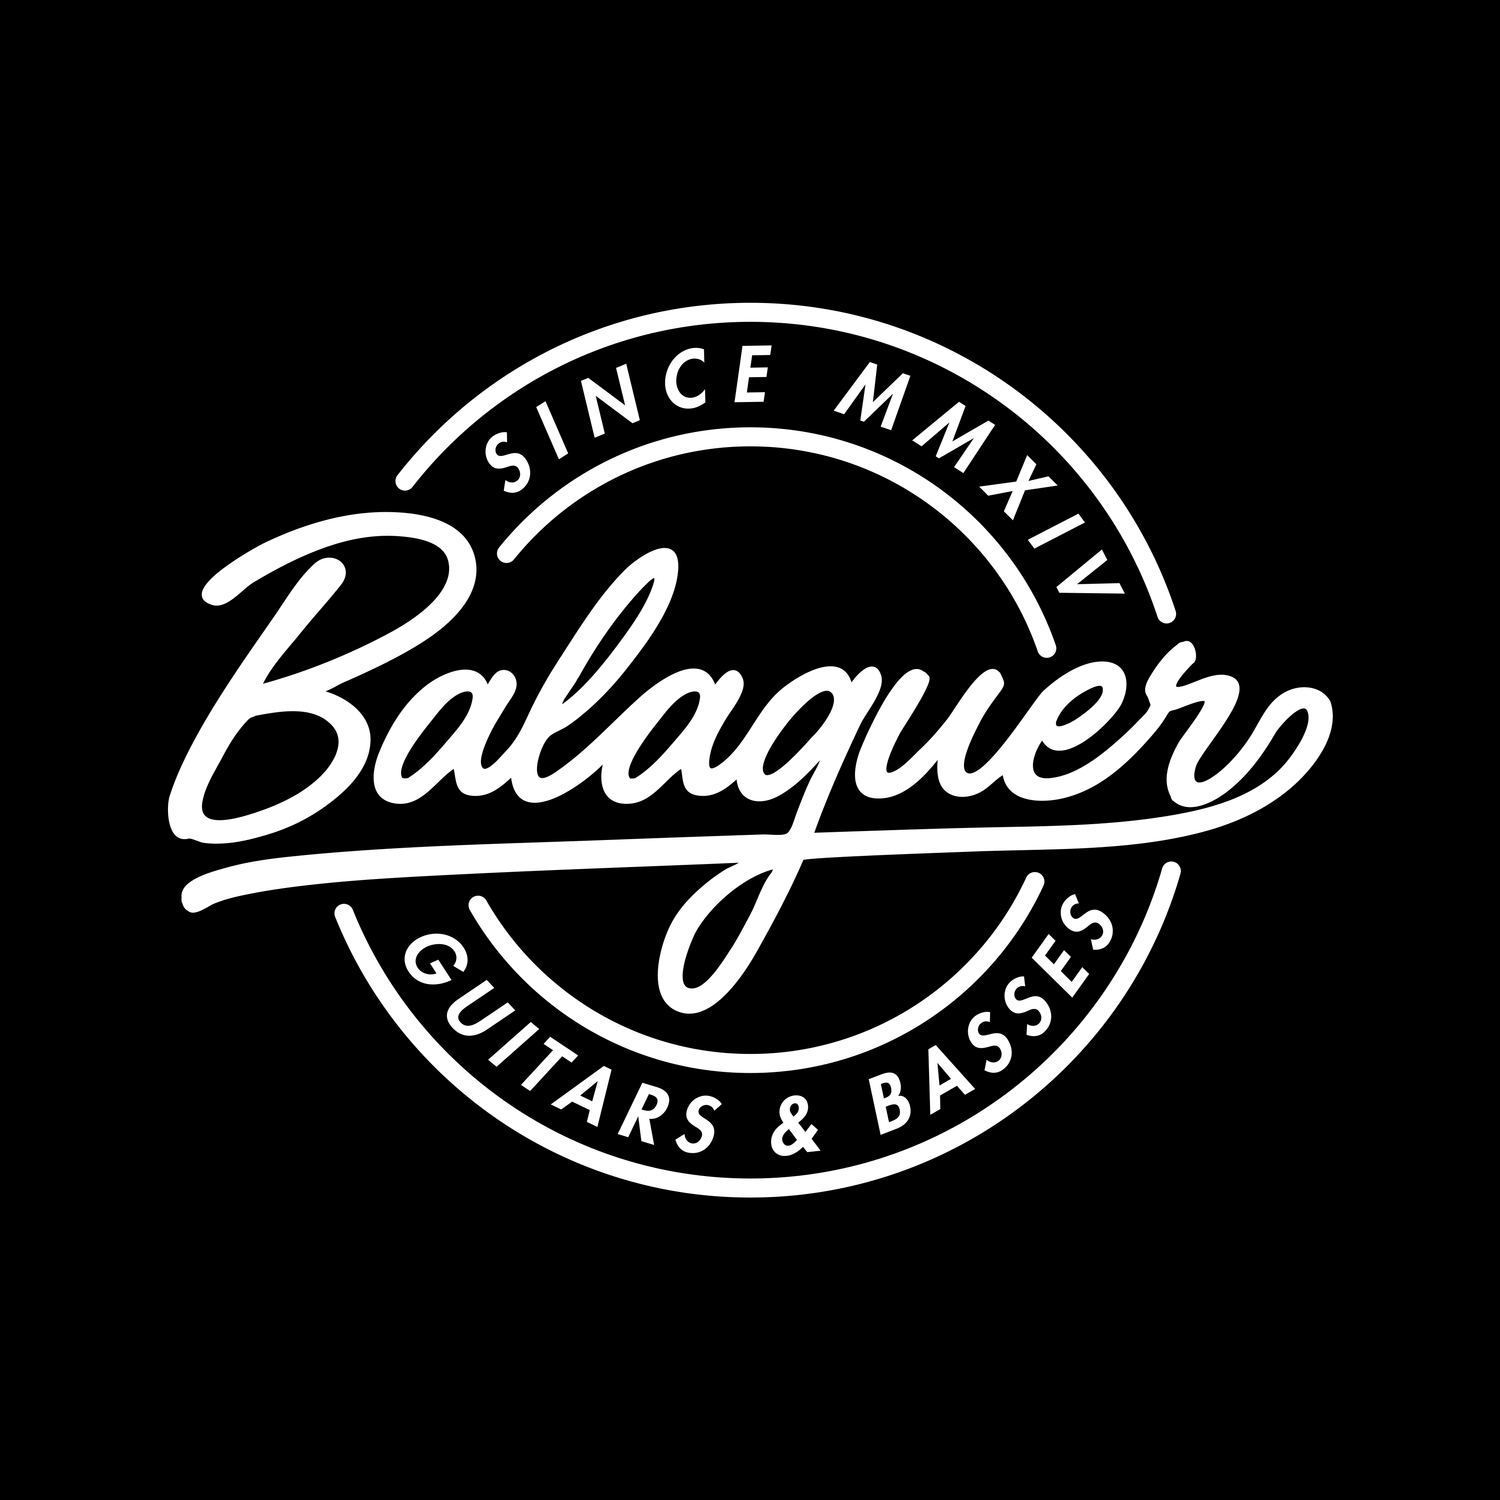 Balaguer Bass